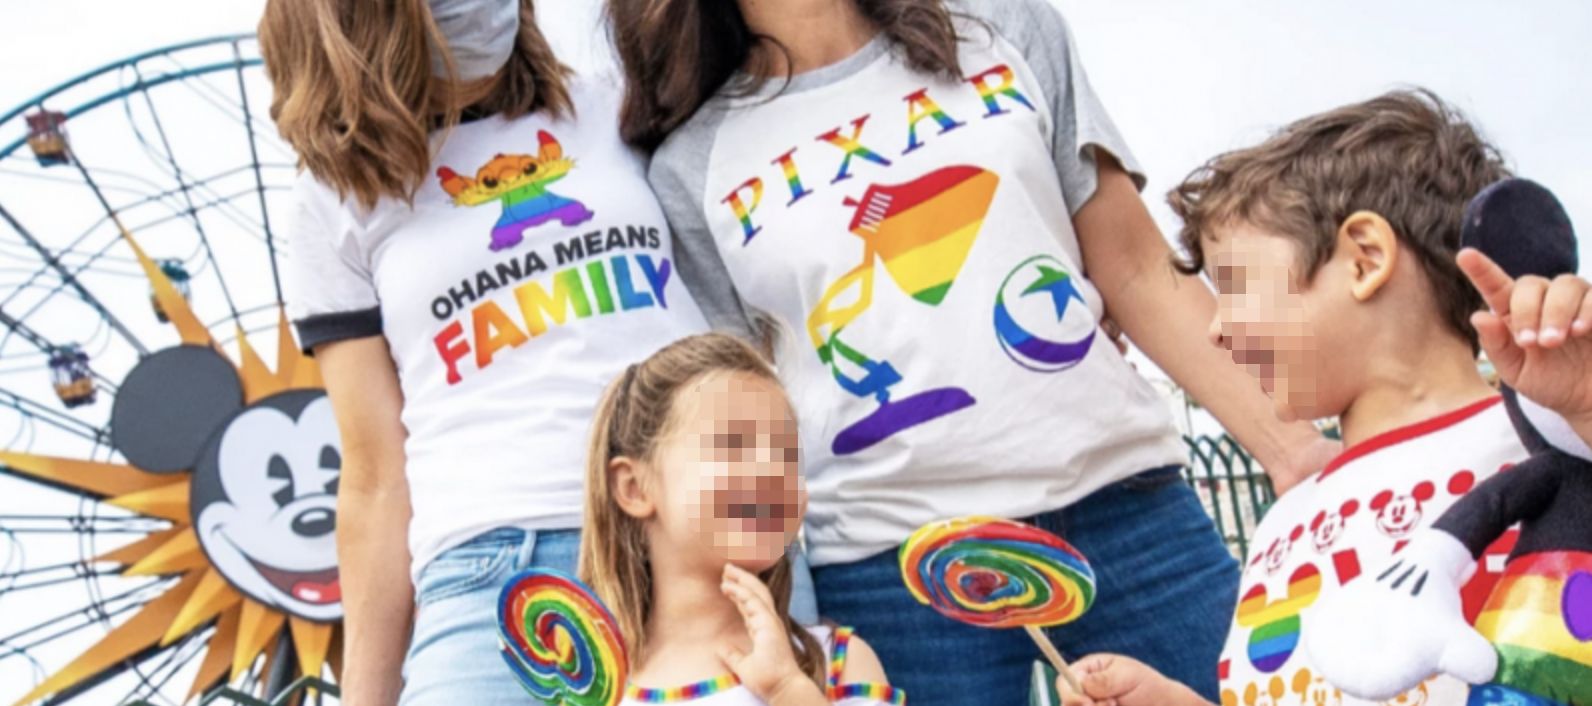 FLASH - La Disney vende prodotti arcobaleno in vista del mese del Pride 1